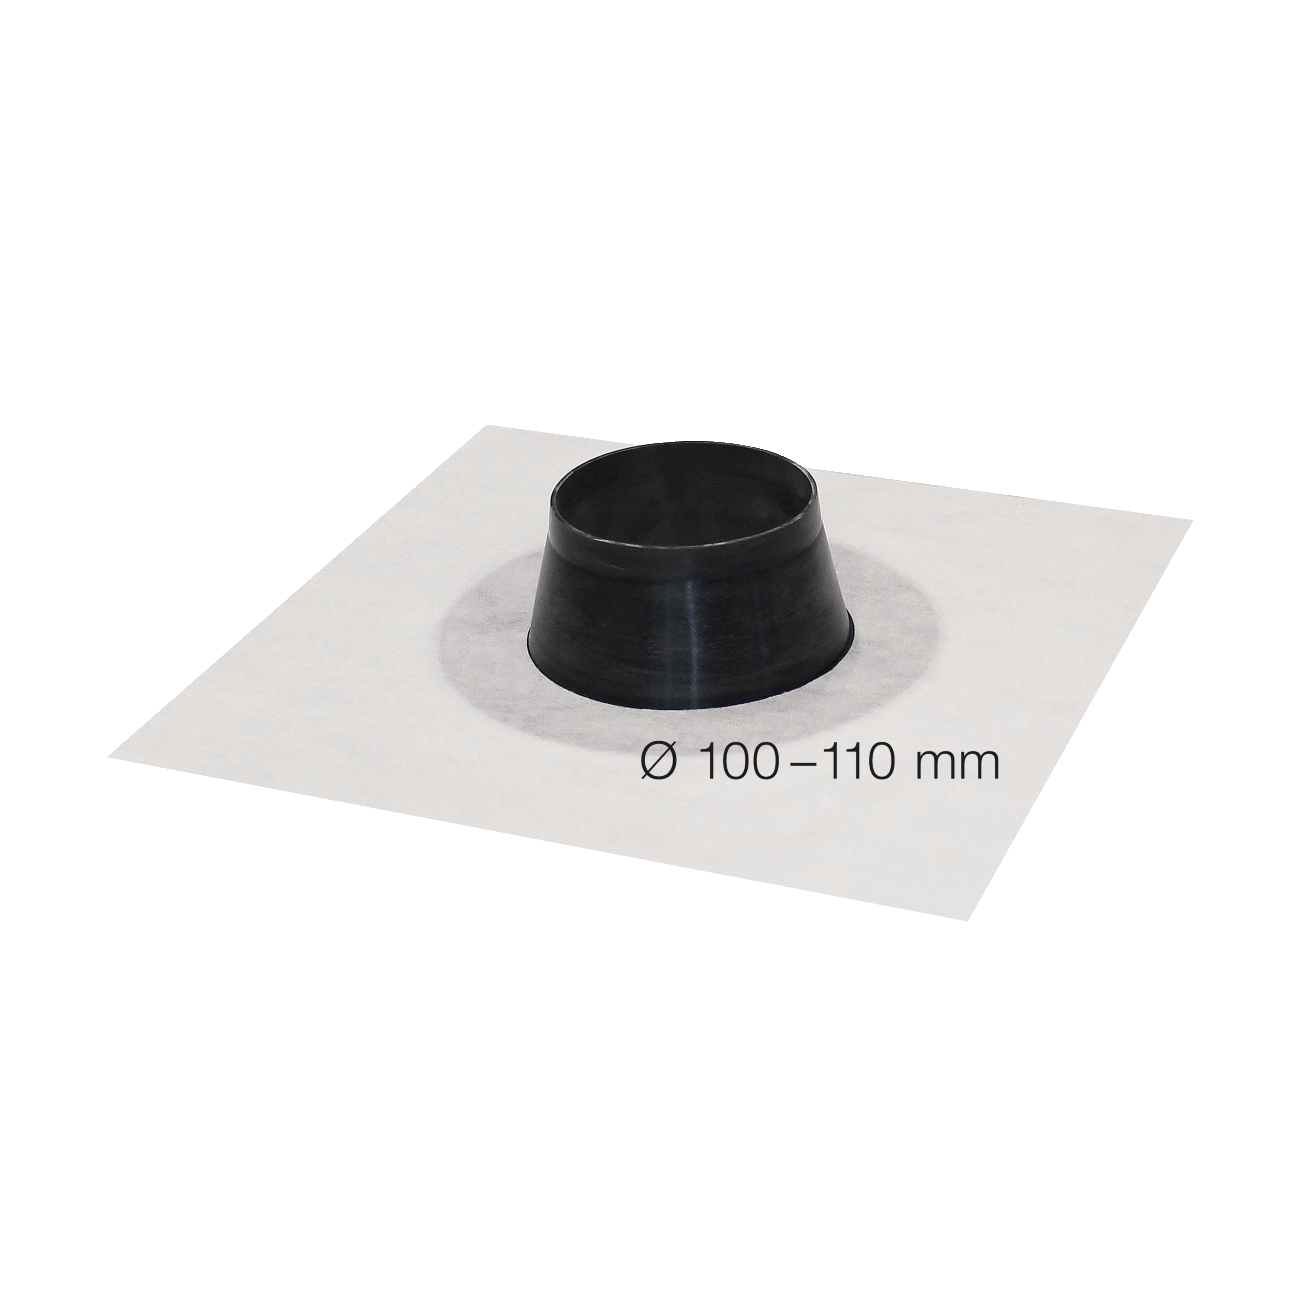  SIGA Fentrim-muhvi valkoinen halkaisija 100-110mmm, putkien läpivientiin